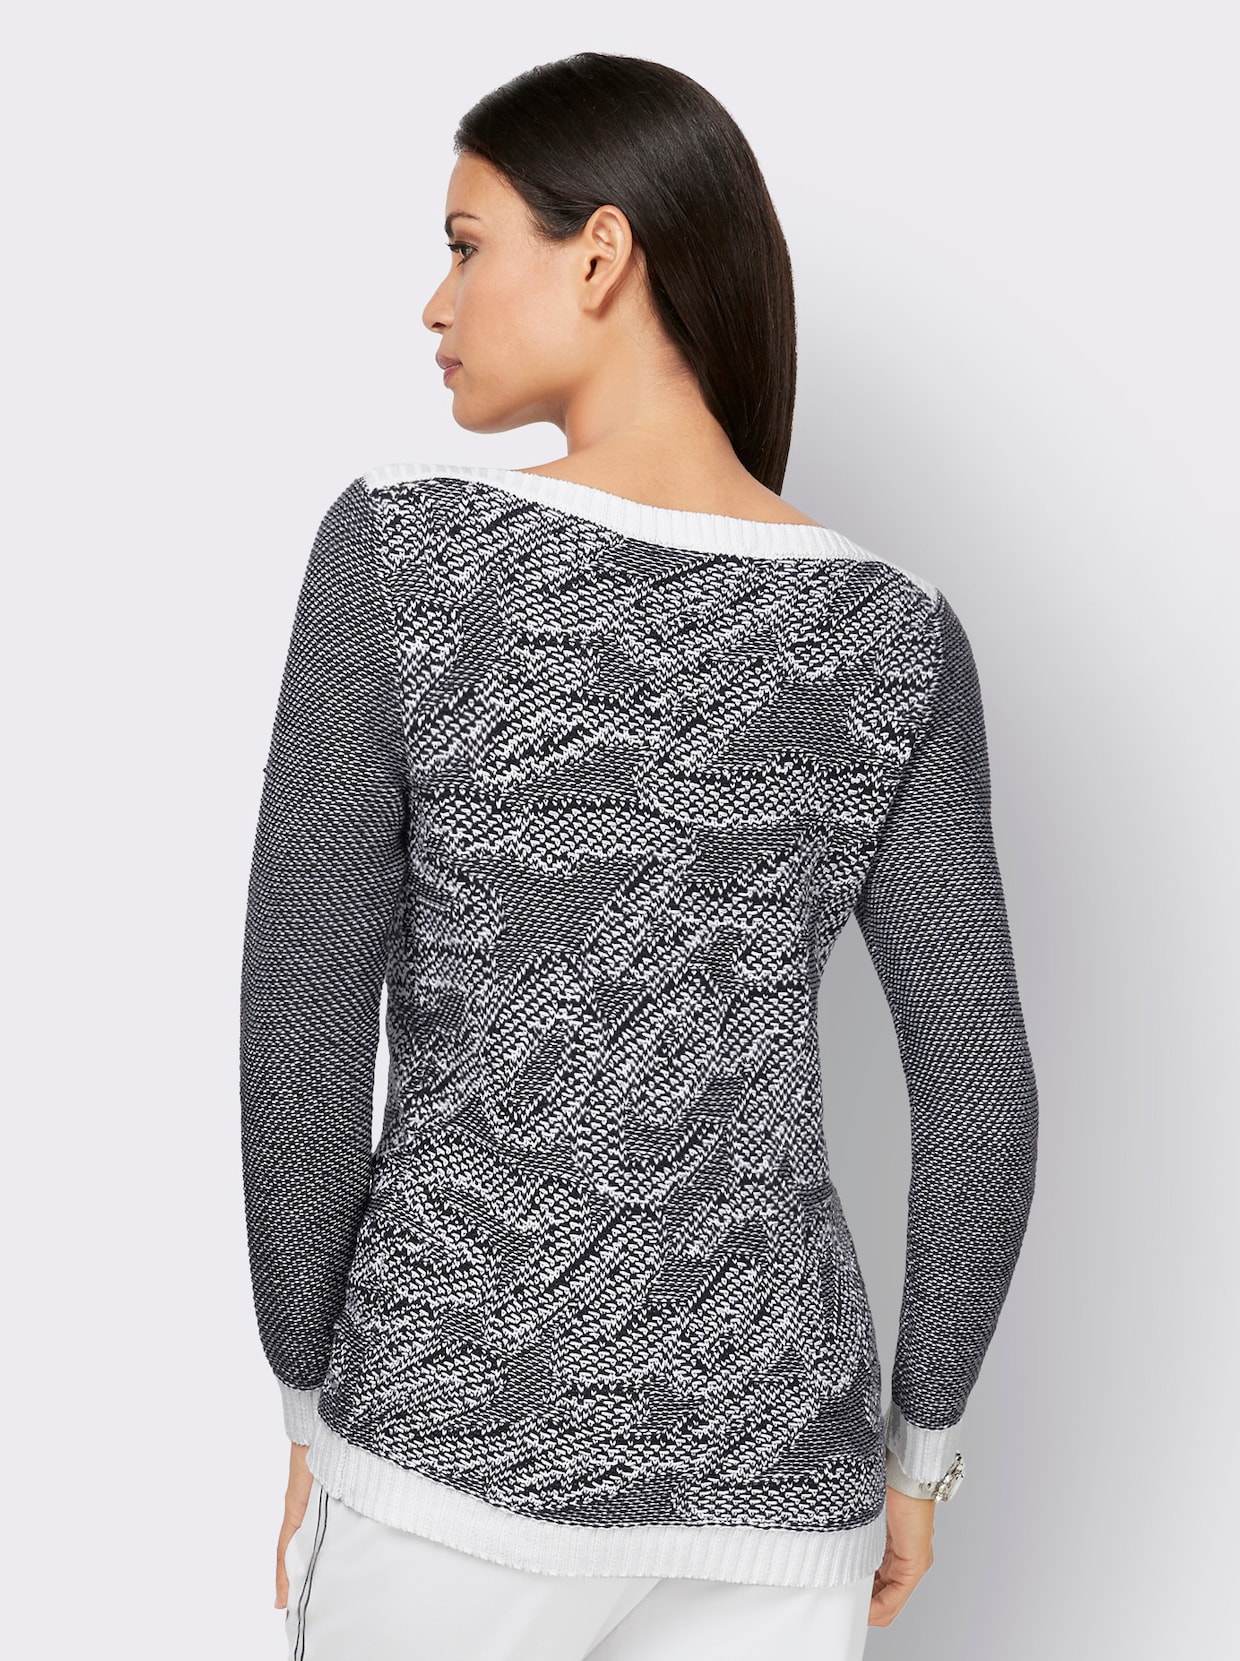 Langarm-Pullover - schwarz-weiß-bedruckt